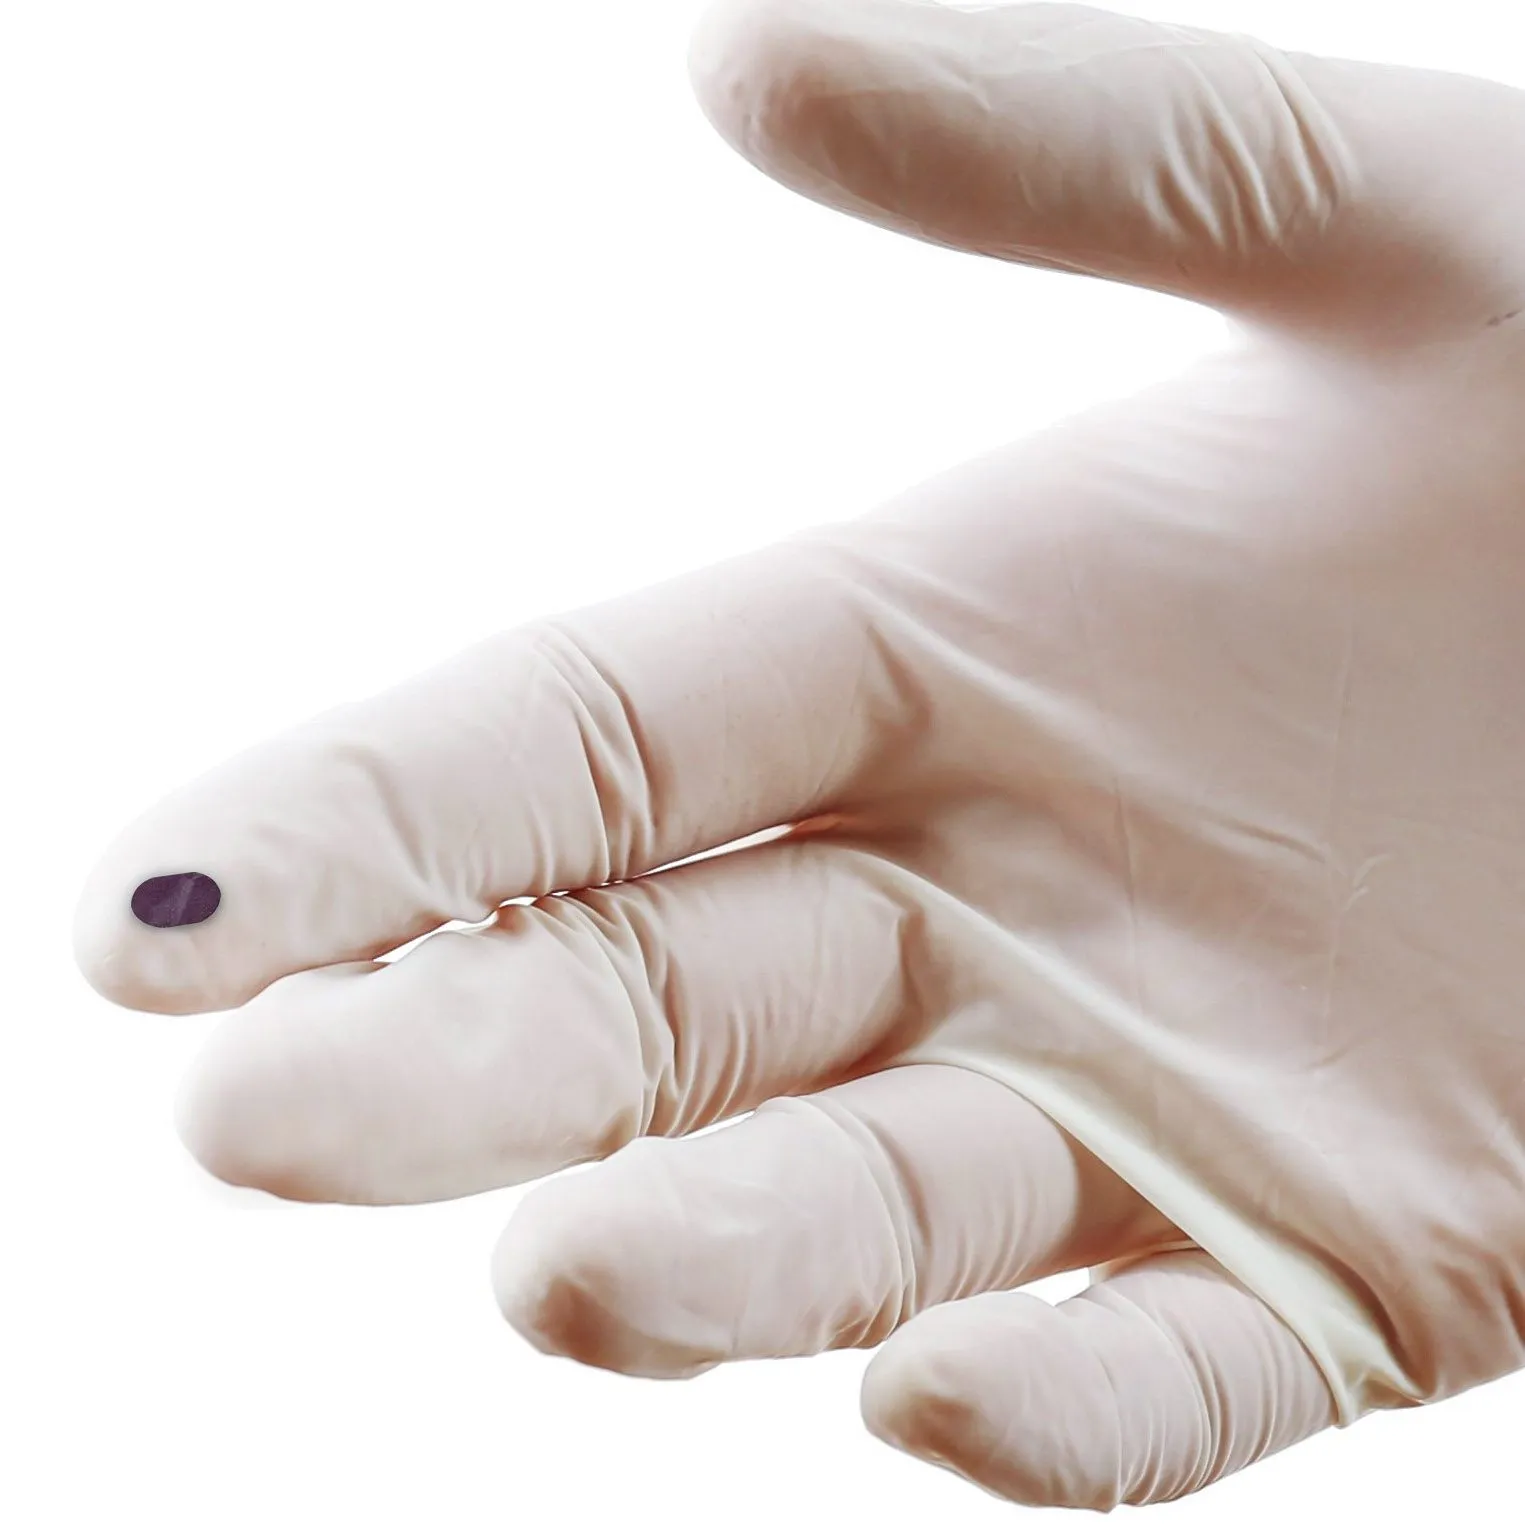 Uma mão usando uma luva cirúrgica de látex segura uma retina artificial, um pequeno implante flexível e de cor escura.